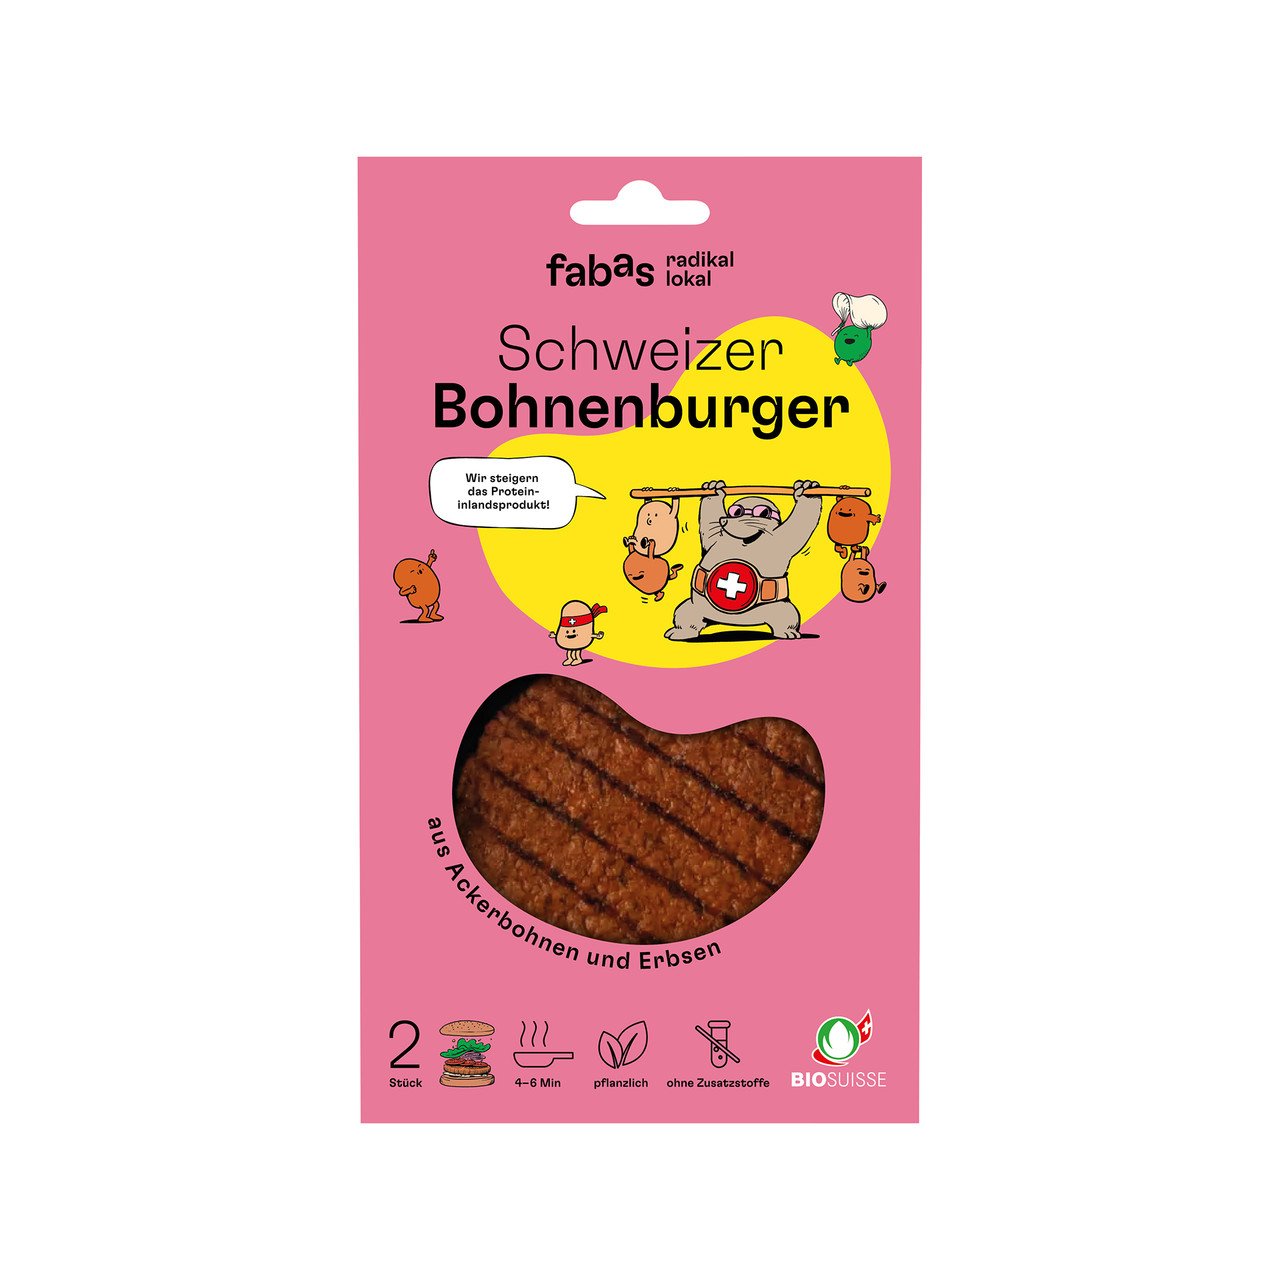 Fabas Schweizer Bohnenburger 200g BioK 